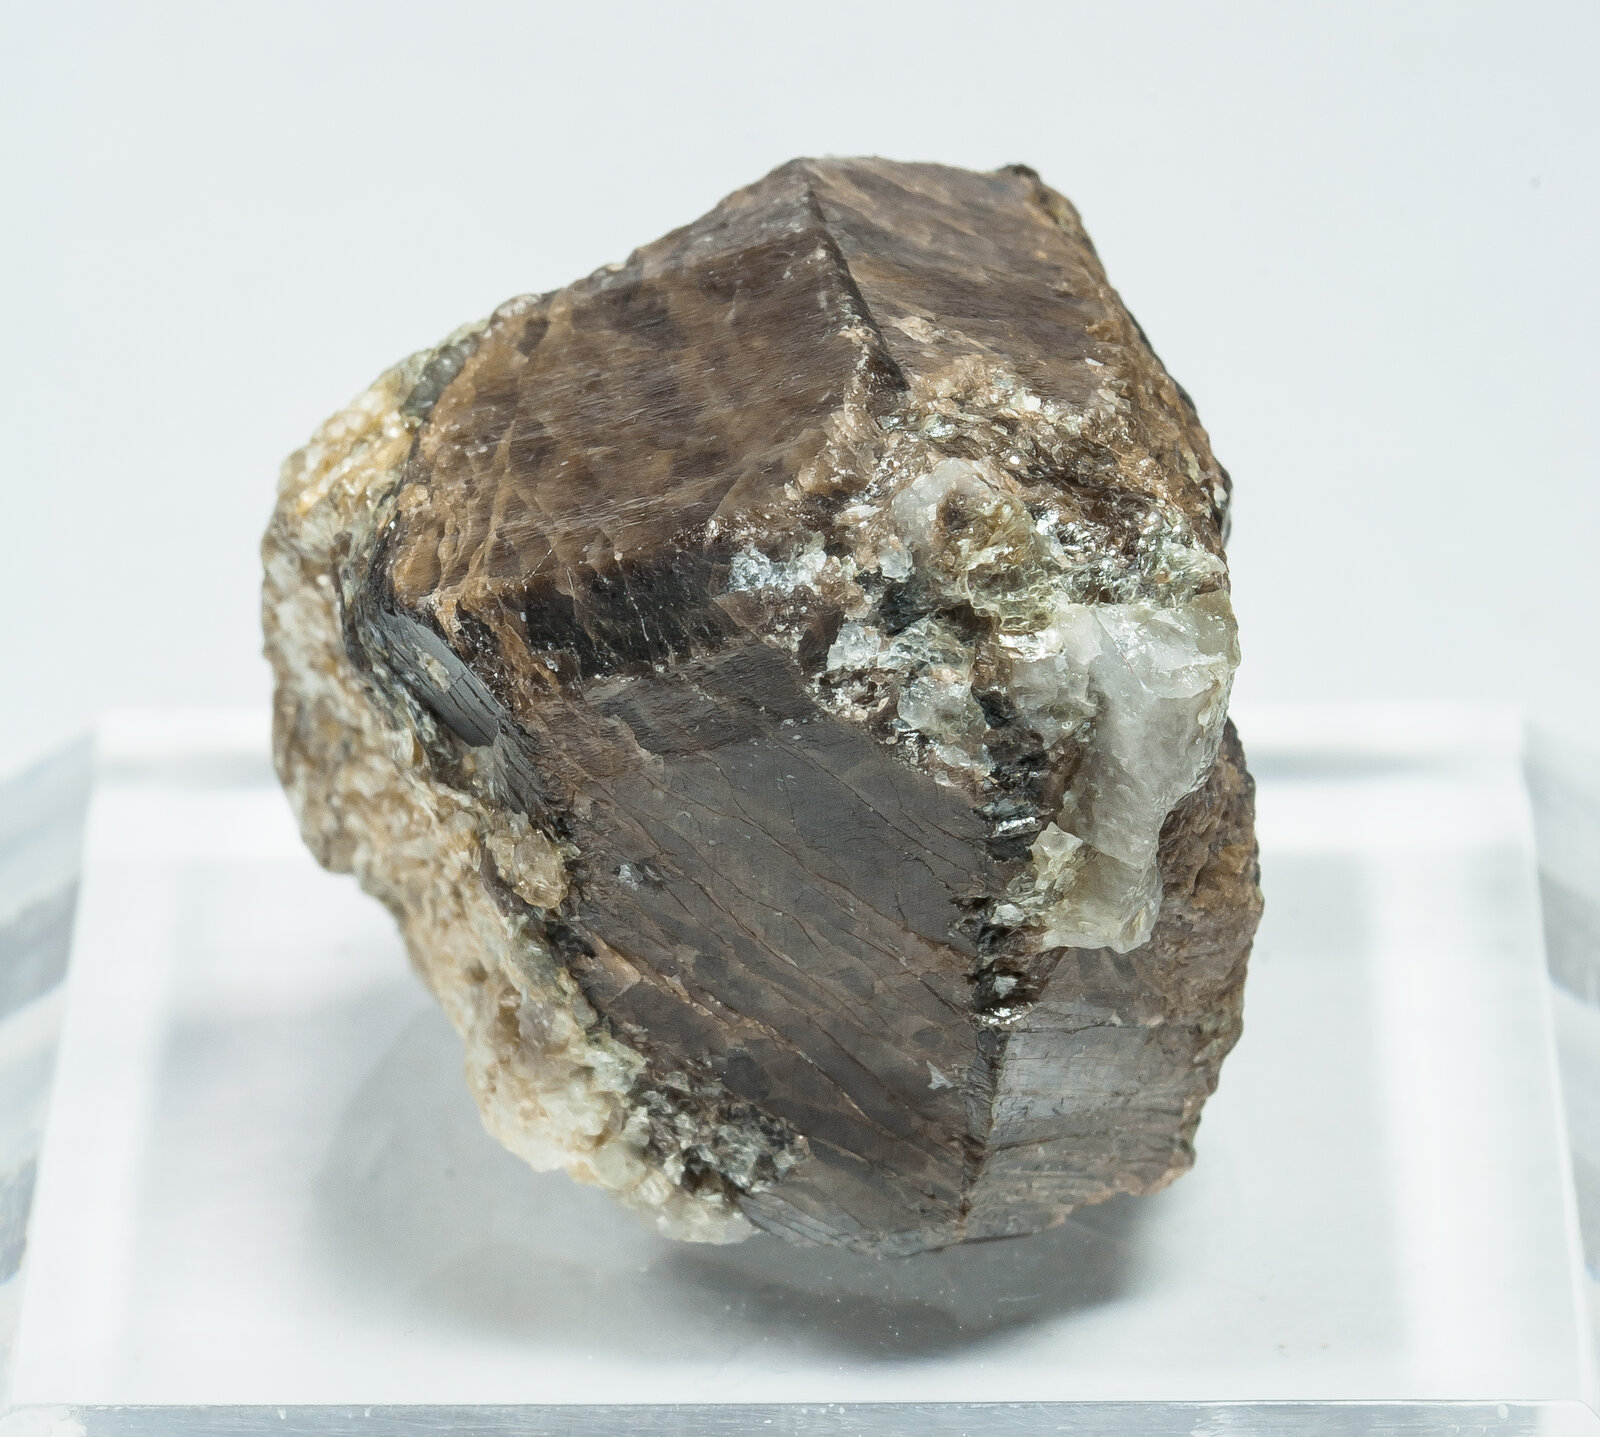 specimens/s_imagesAP5/Cassiterite-TTE46AP5s.jpg